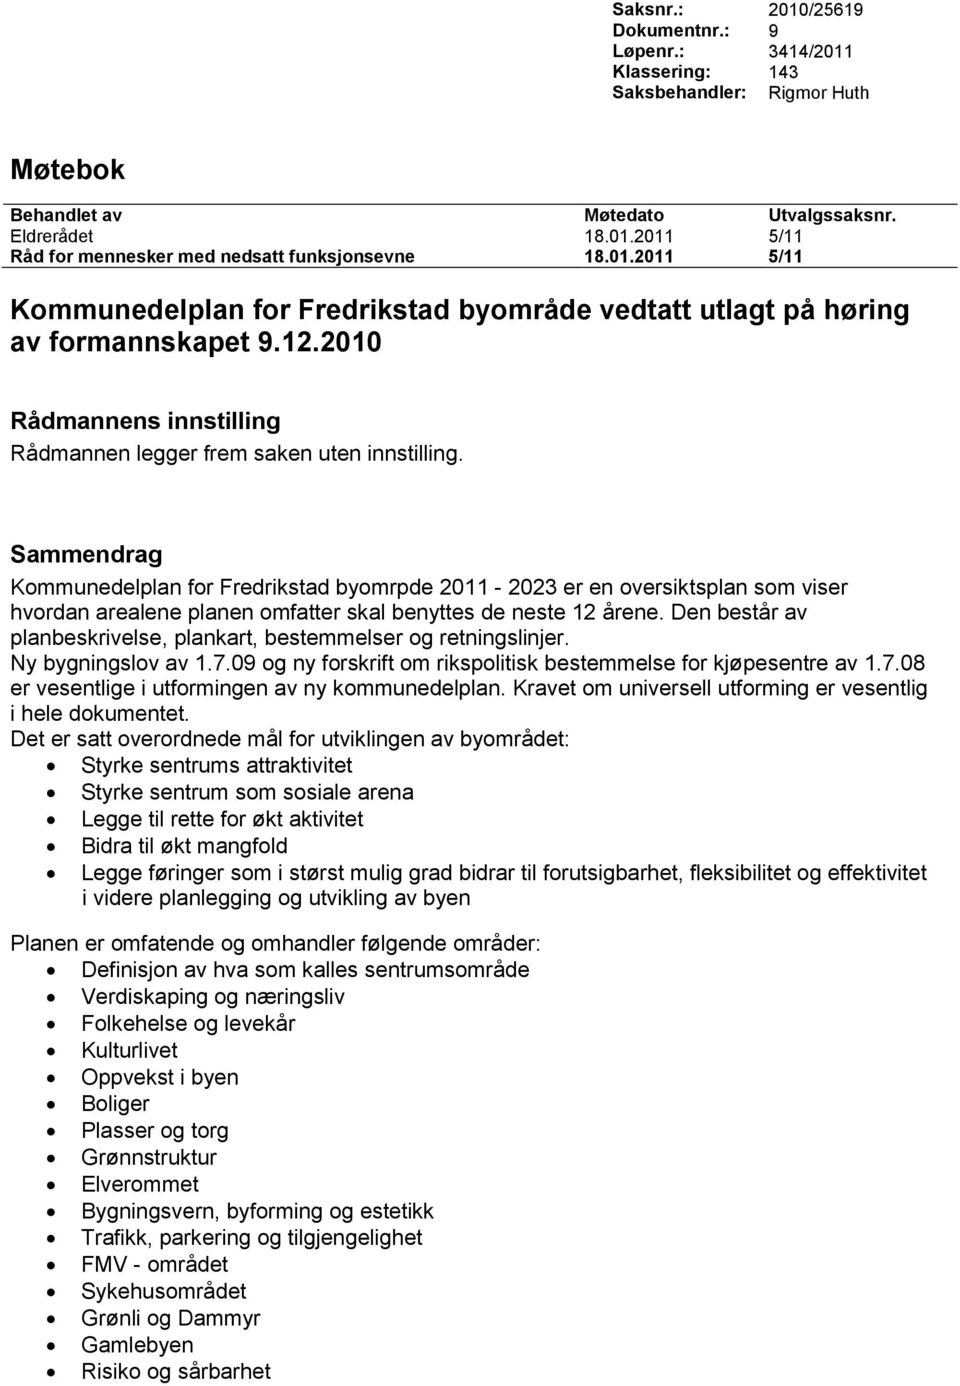 Sammendrag Kommunedelplan for Fredrikstad byomrpde 2011-2023 er en oversiktsplan som viser hvordan arealene planen omfatter skal benyttes de neste 12 årene.